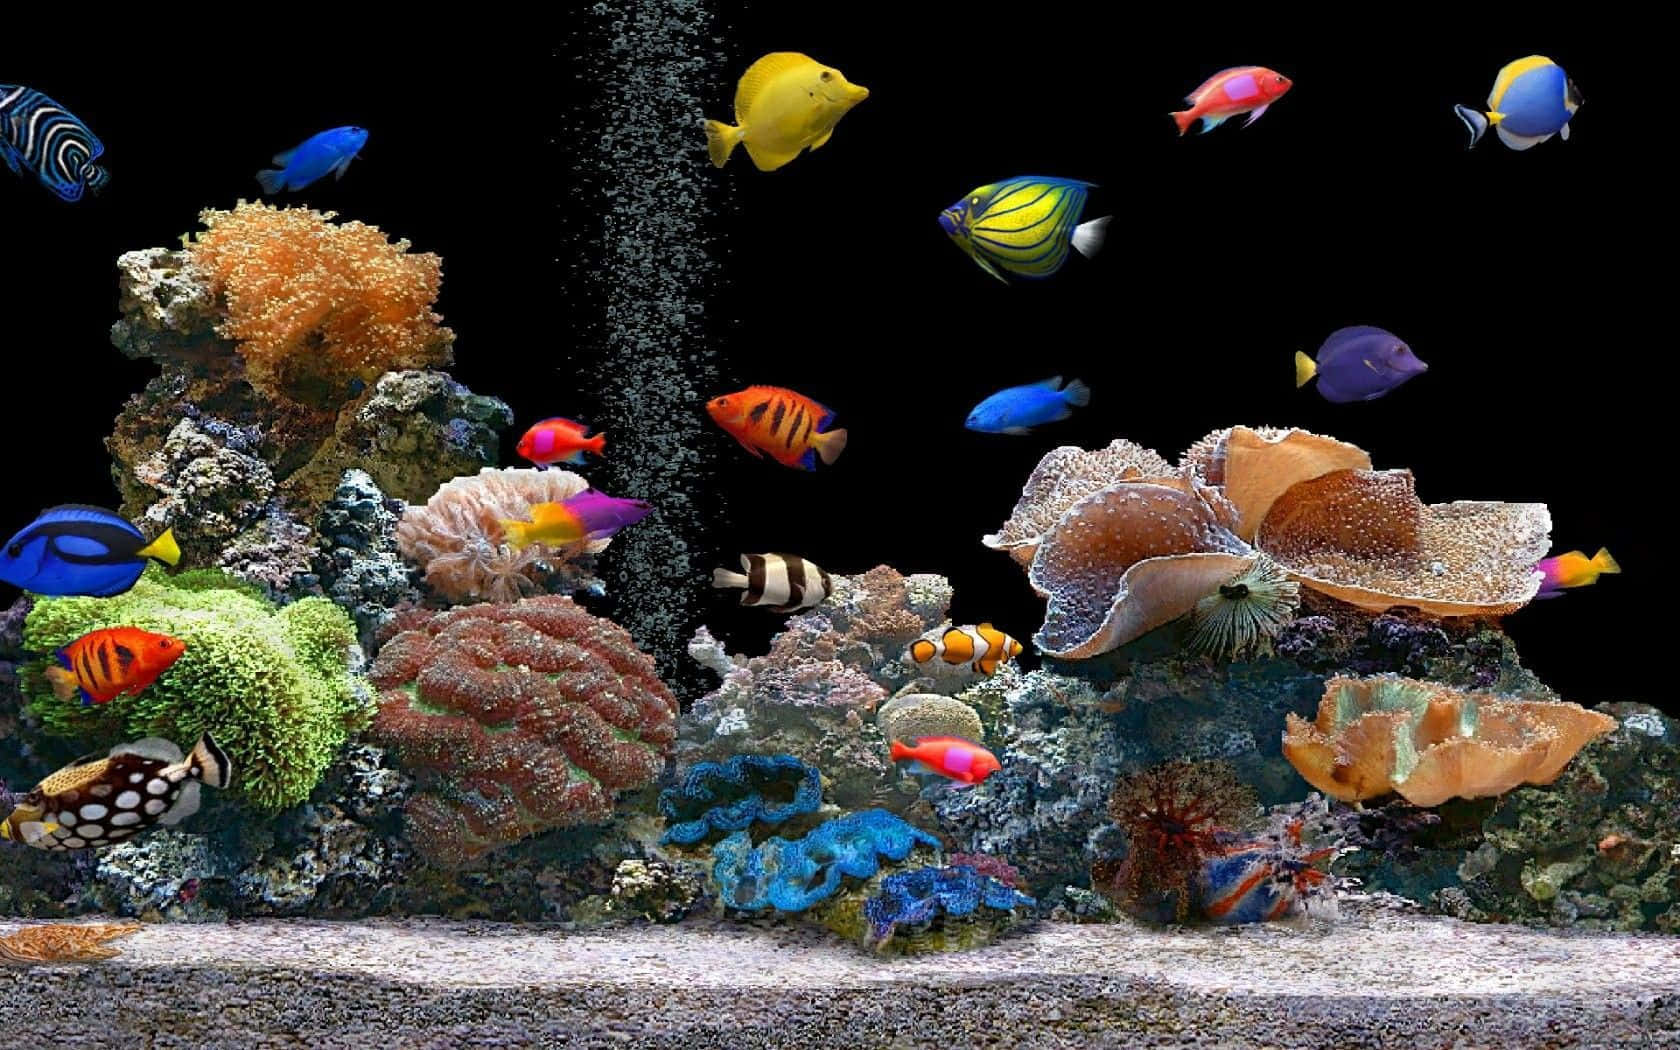 A Live Tropical Fish Swims Through A Clear Blue Aquarium Background